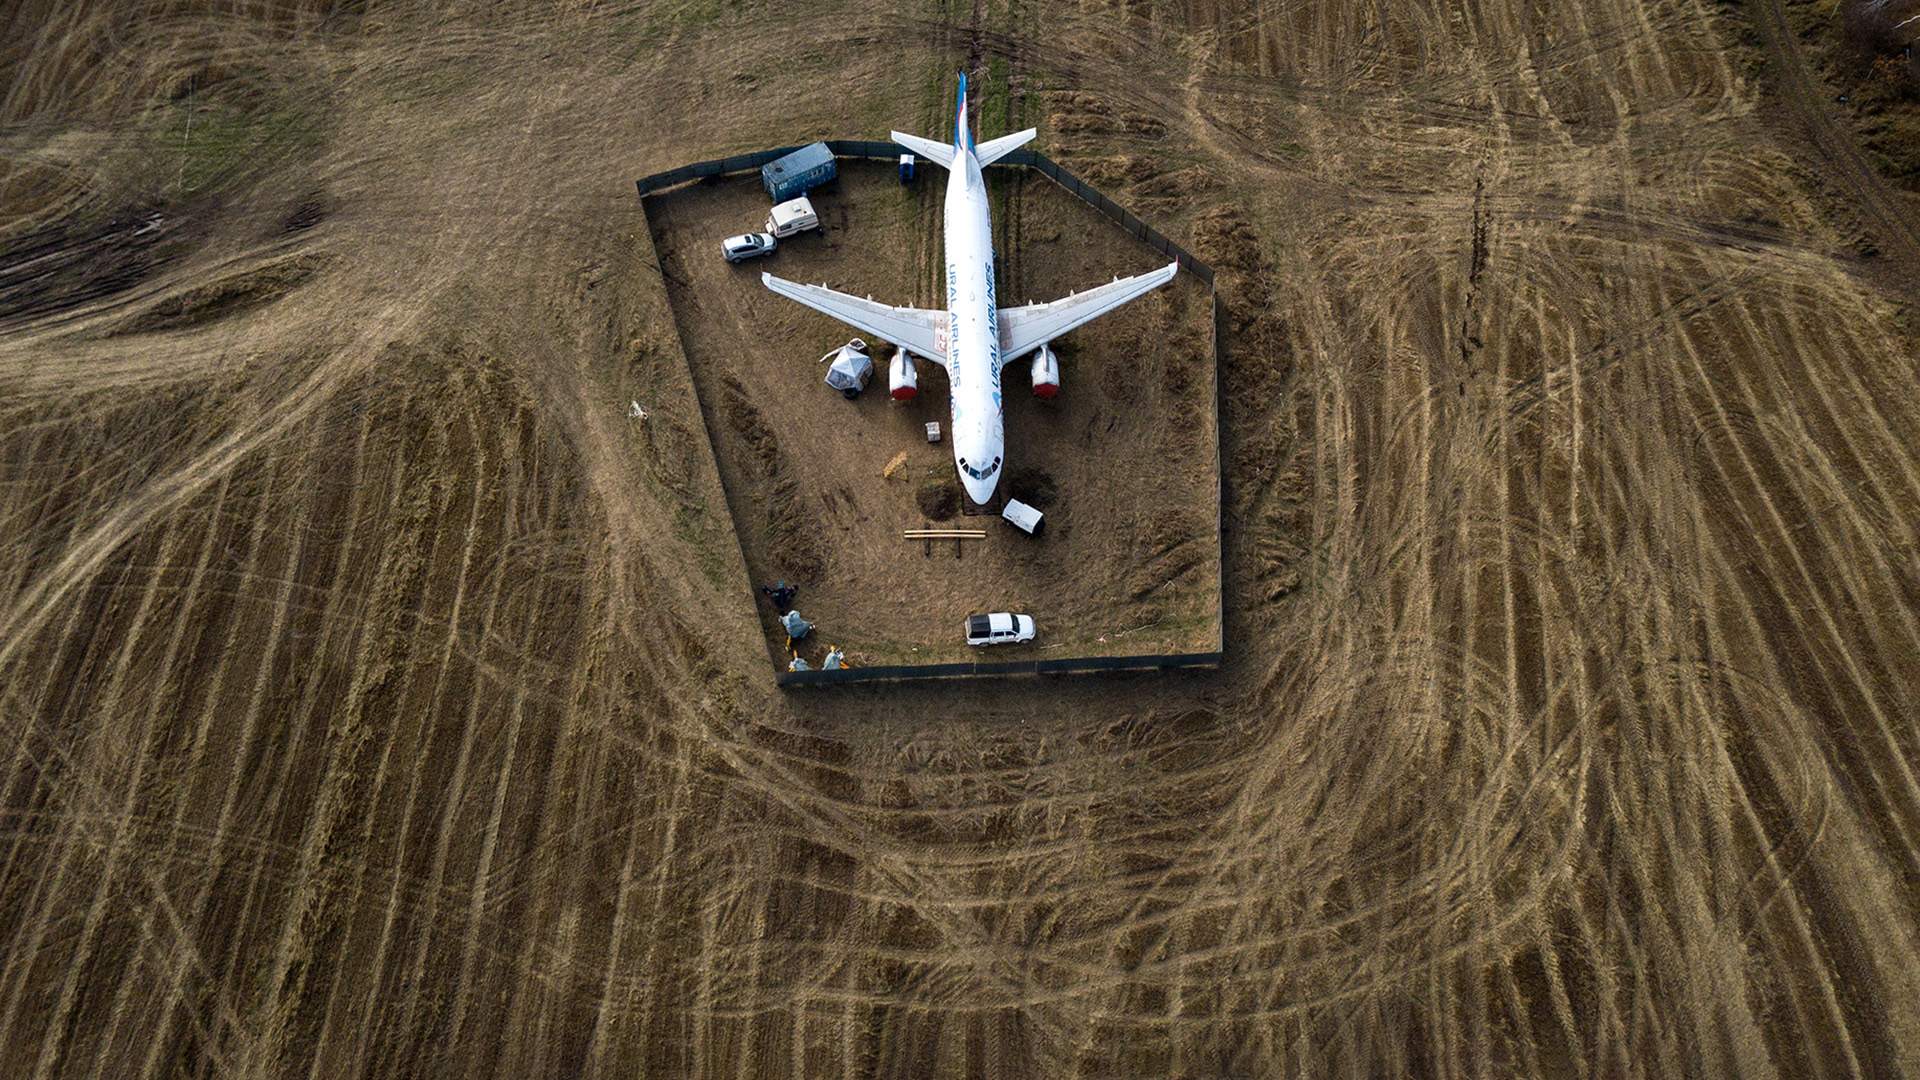 Аварийная посадка самолета в пшеничном поле, самолет Уральских авиалиний  в пшеничном поле